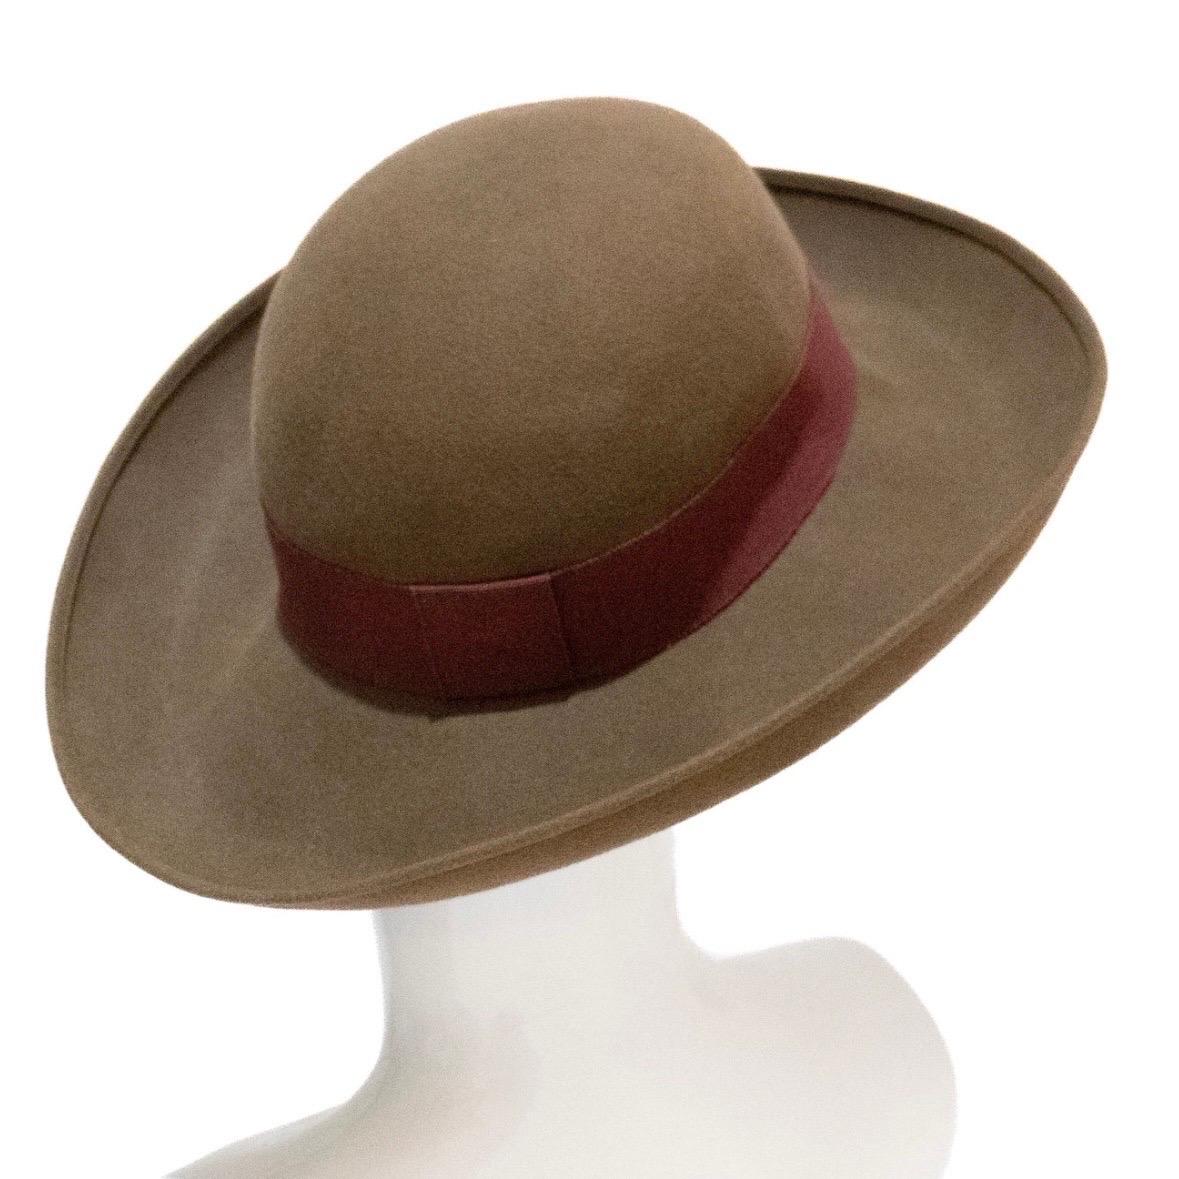 Chanel Broad-Brimmed Felt Hat 2